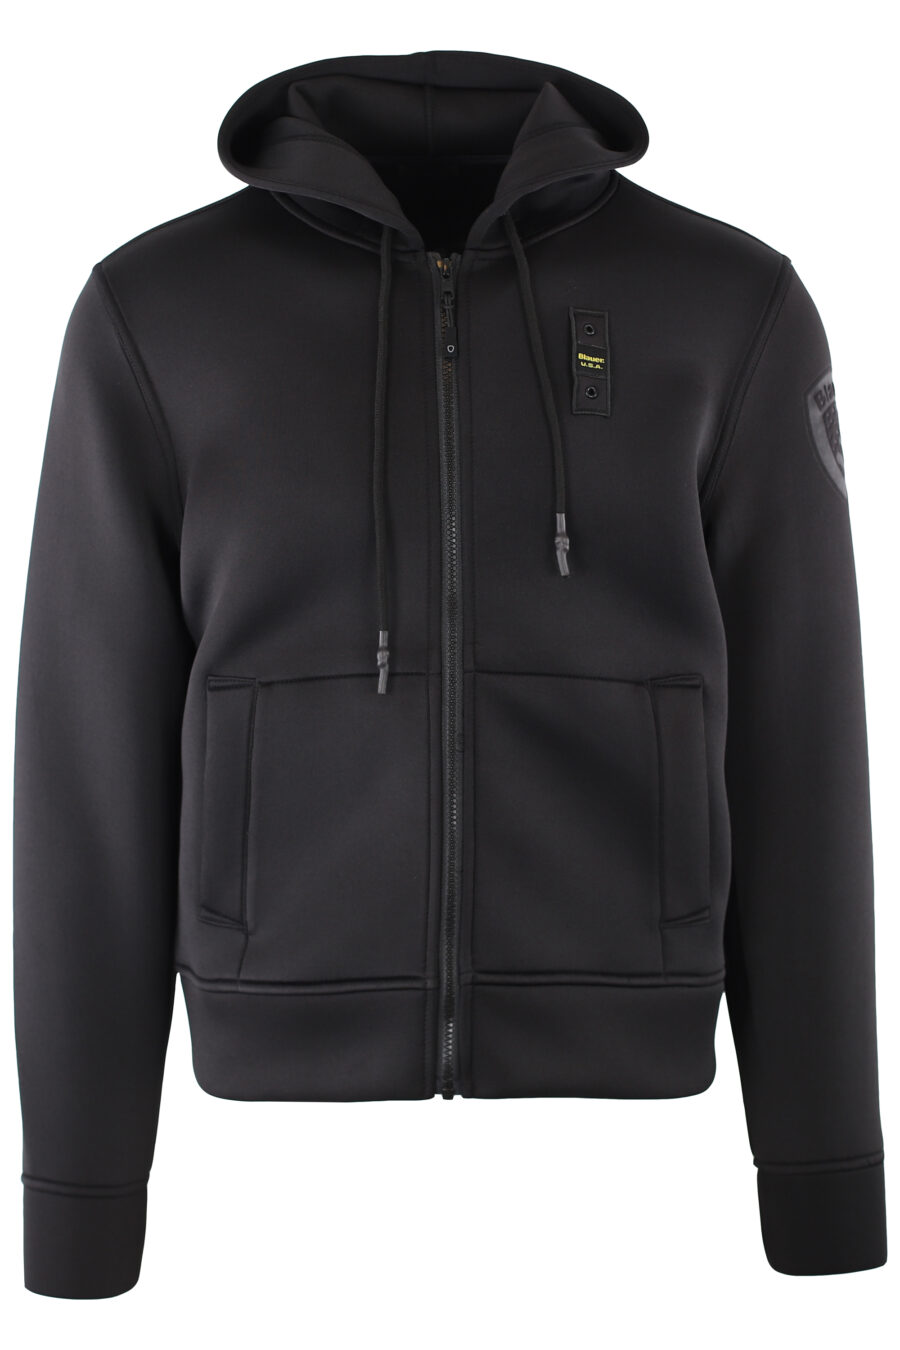 Black sweatshirt with hood and zip - IMG 7350